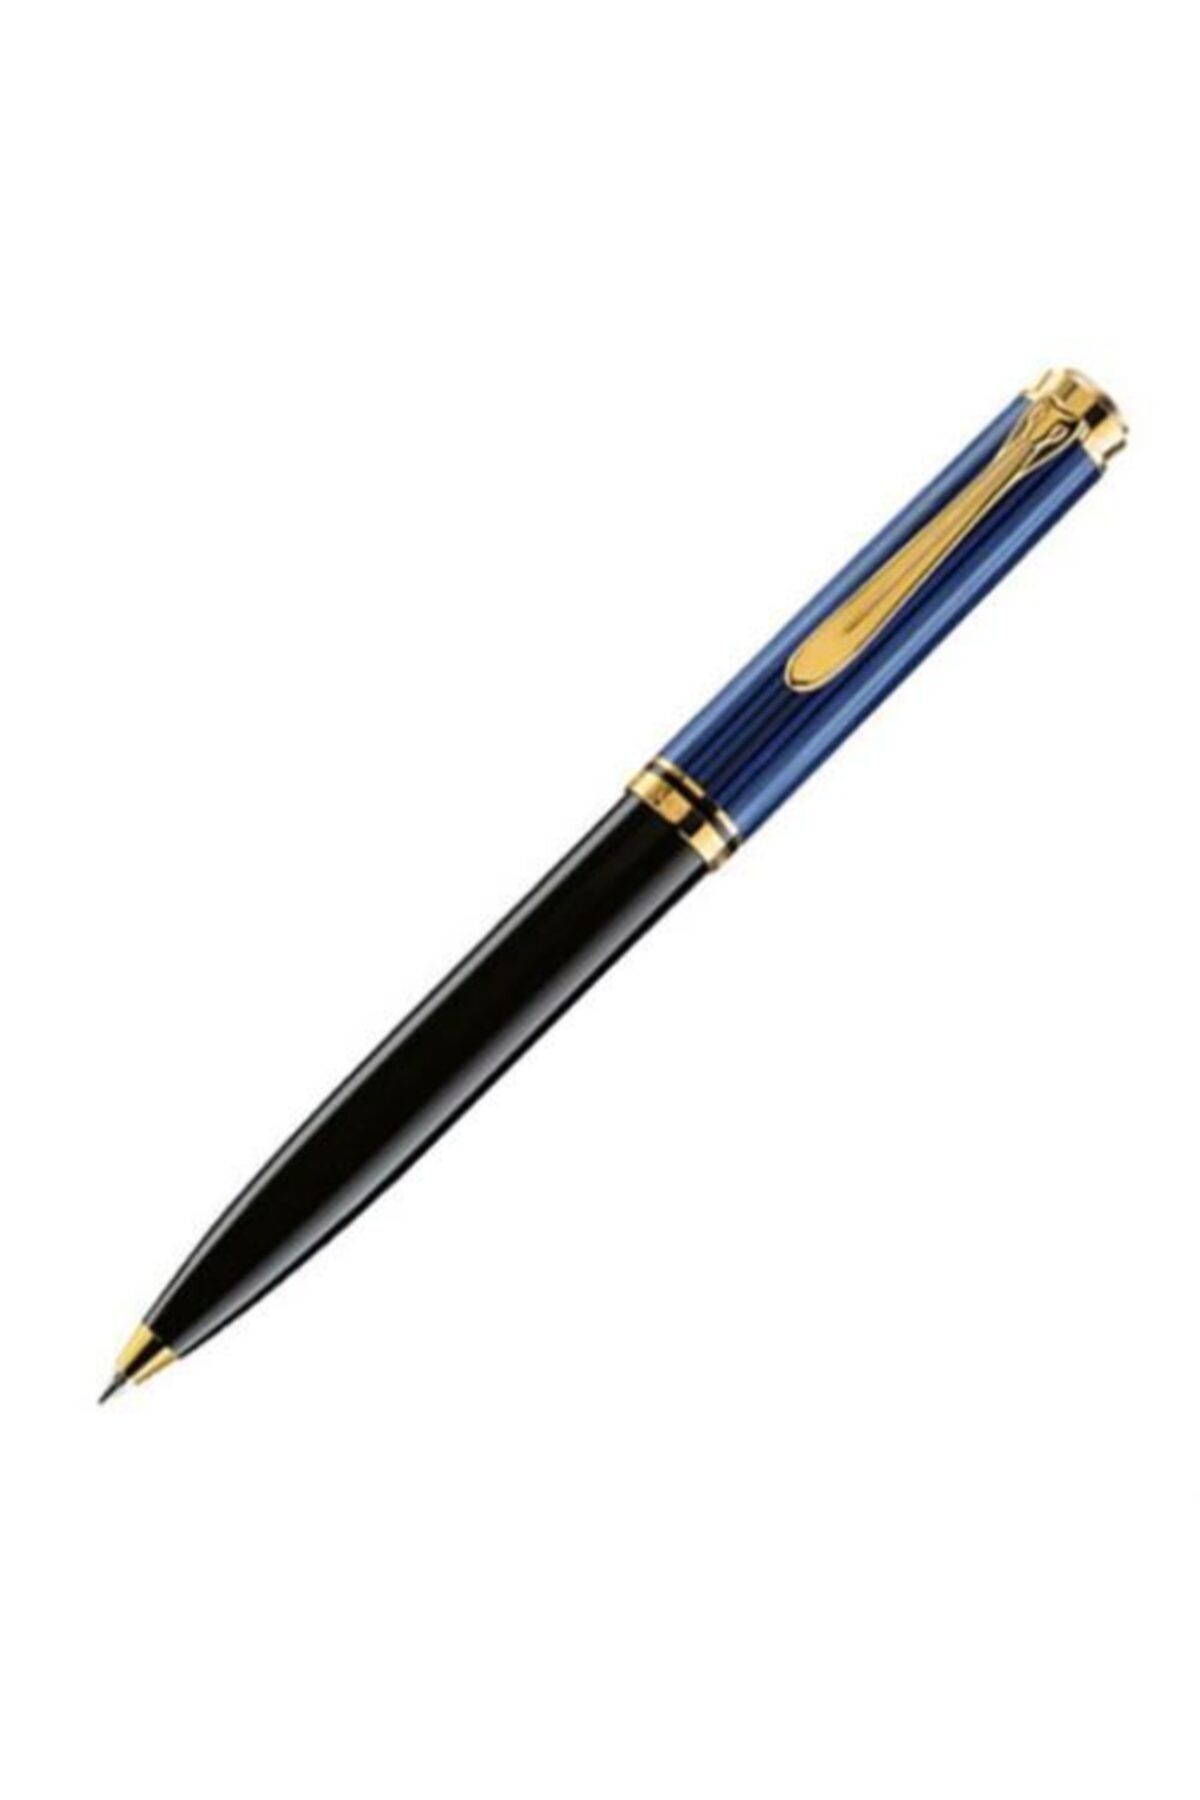 Pelikan K600 Tükenmez Kalem Mavi-siyah Pel-k600m